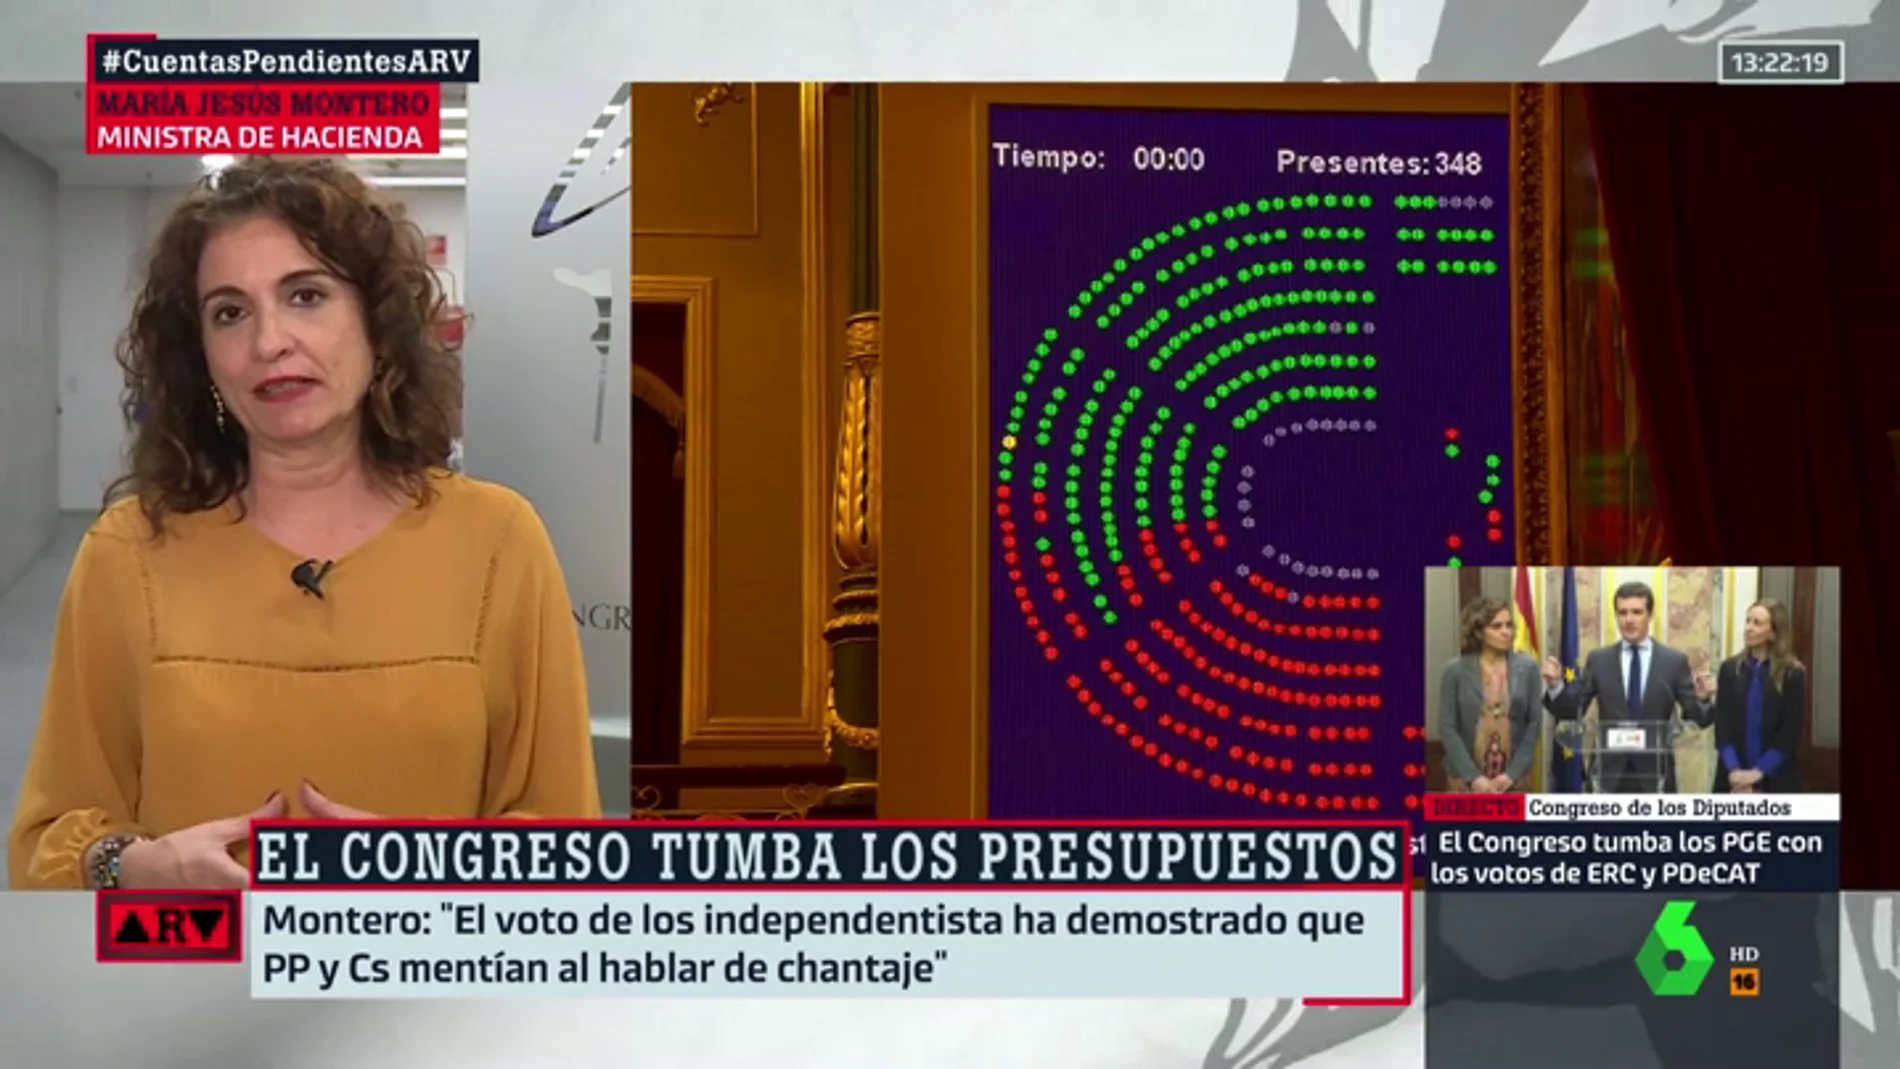 La ministra Montero, tras la derrota en los Presupuestos: "La derecha impide el progreso y la recuperación de derechos"